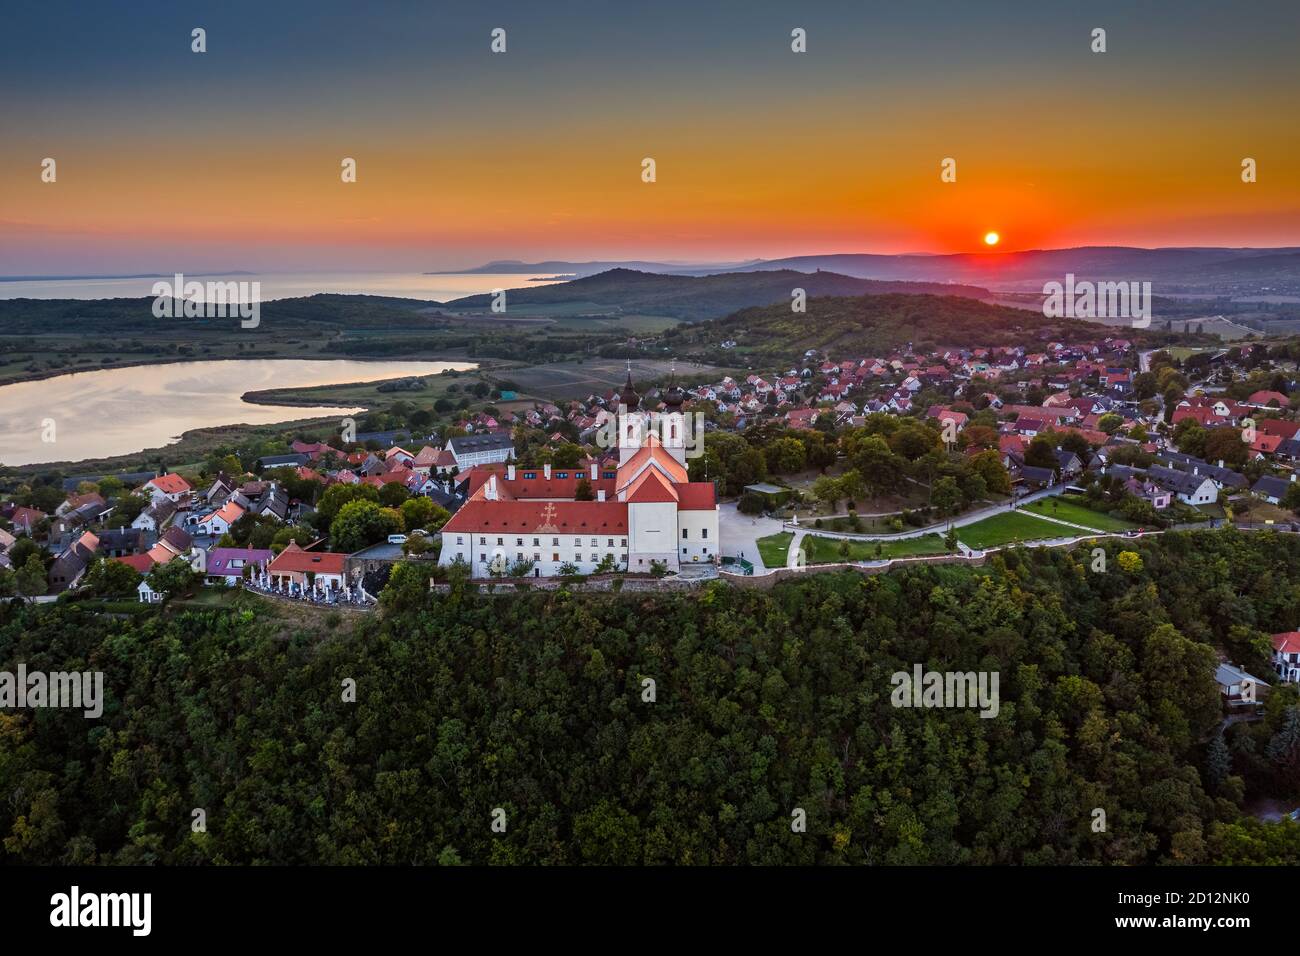 Tihany, Ungheria - veduta panoramica aerea del famoso Monastero Benedettino di Tihany (Abbazia di Tihany, Tihanyi Apatsag) con un bel cielo dorato al sole Foto Stock